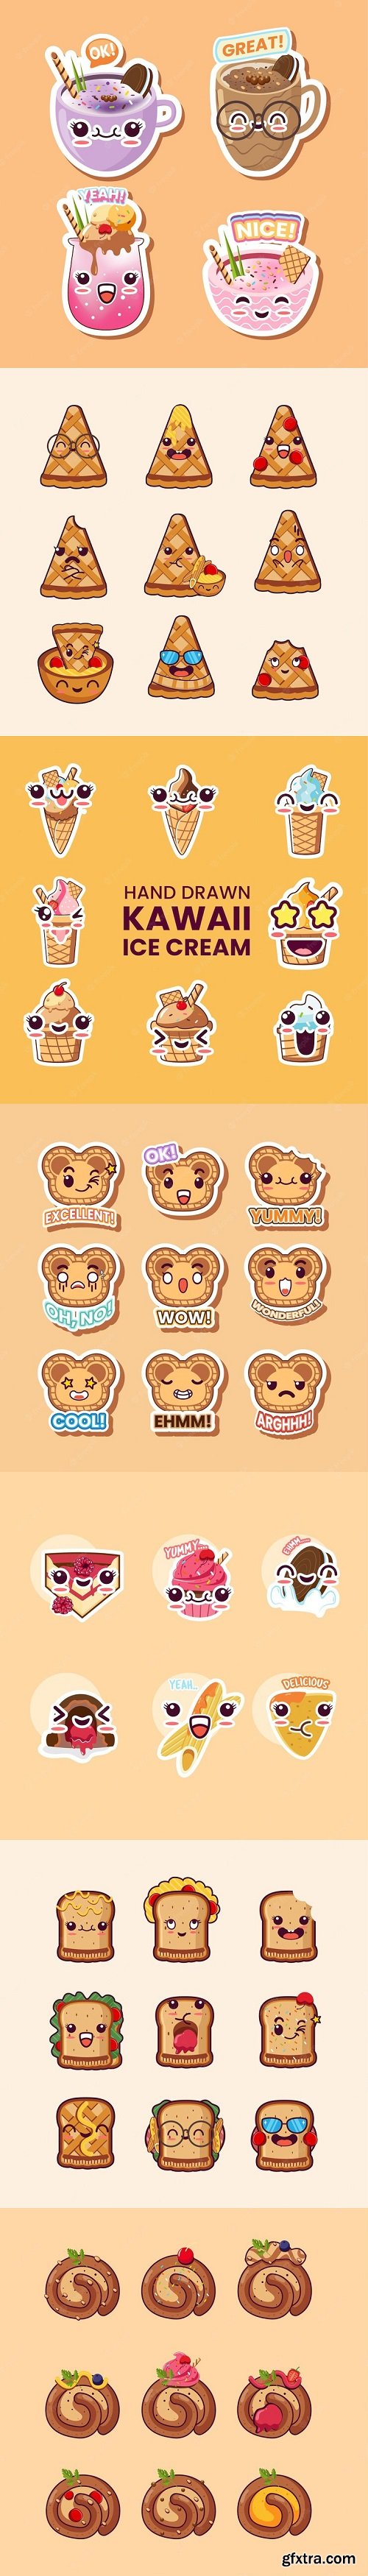 Cute Kawaii Stickers set